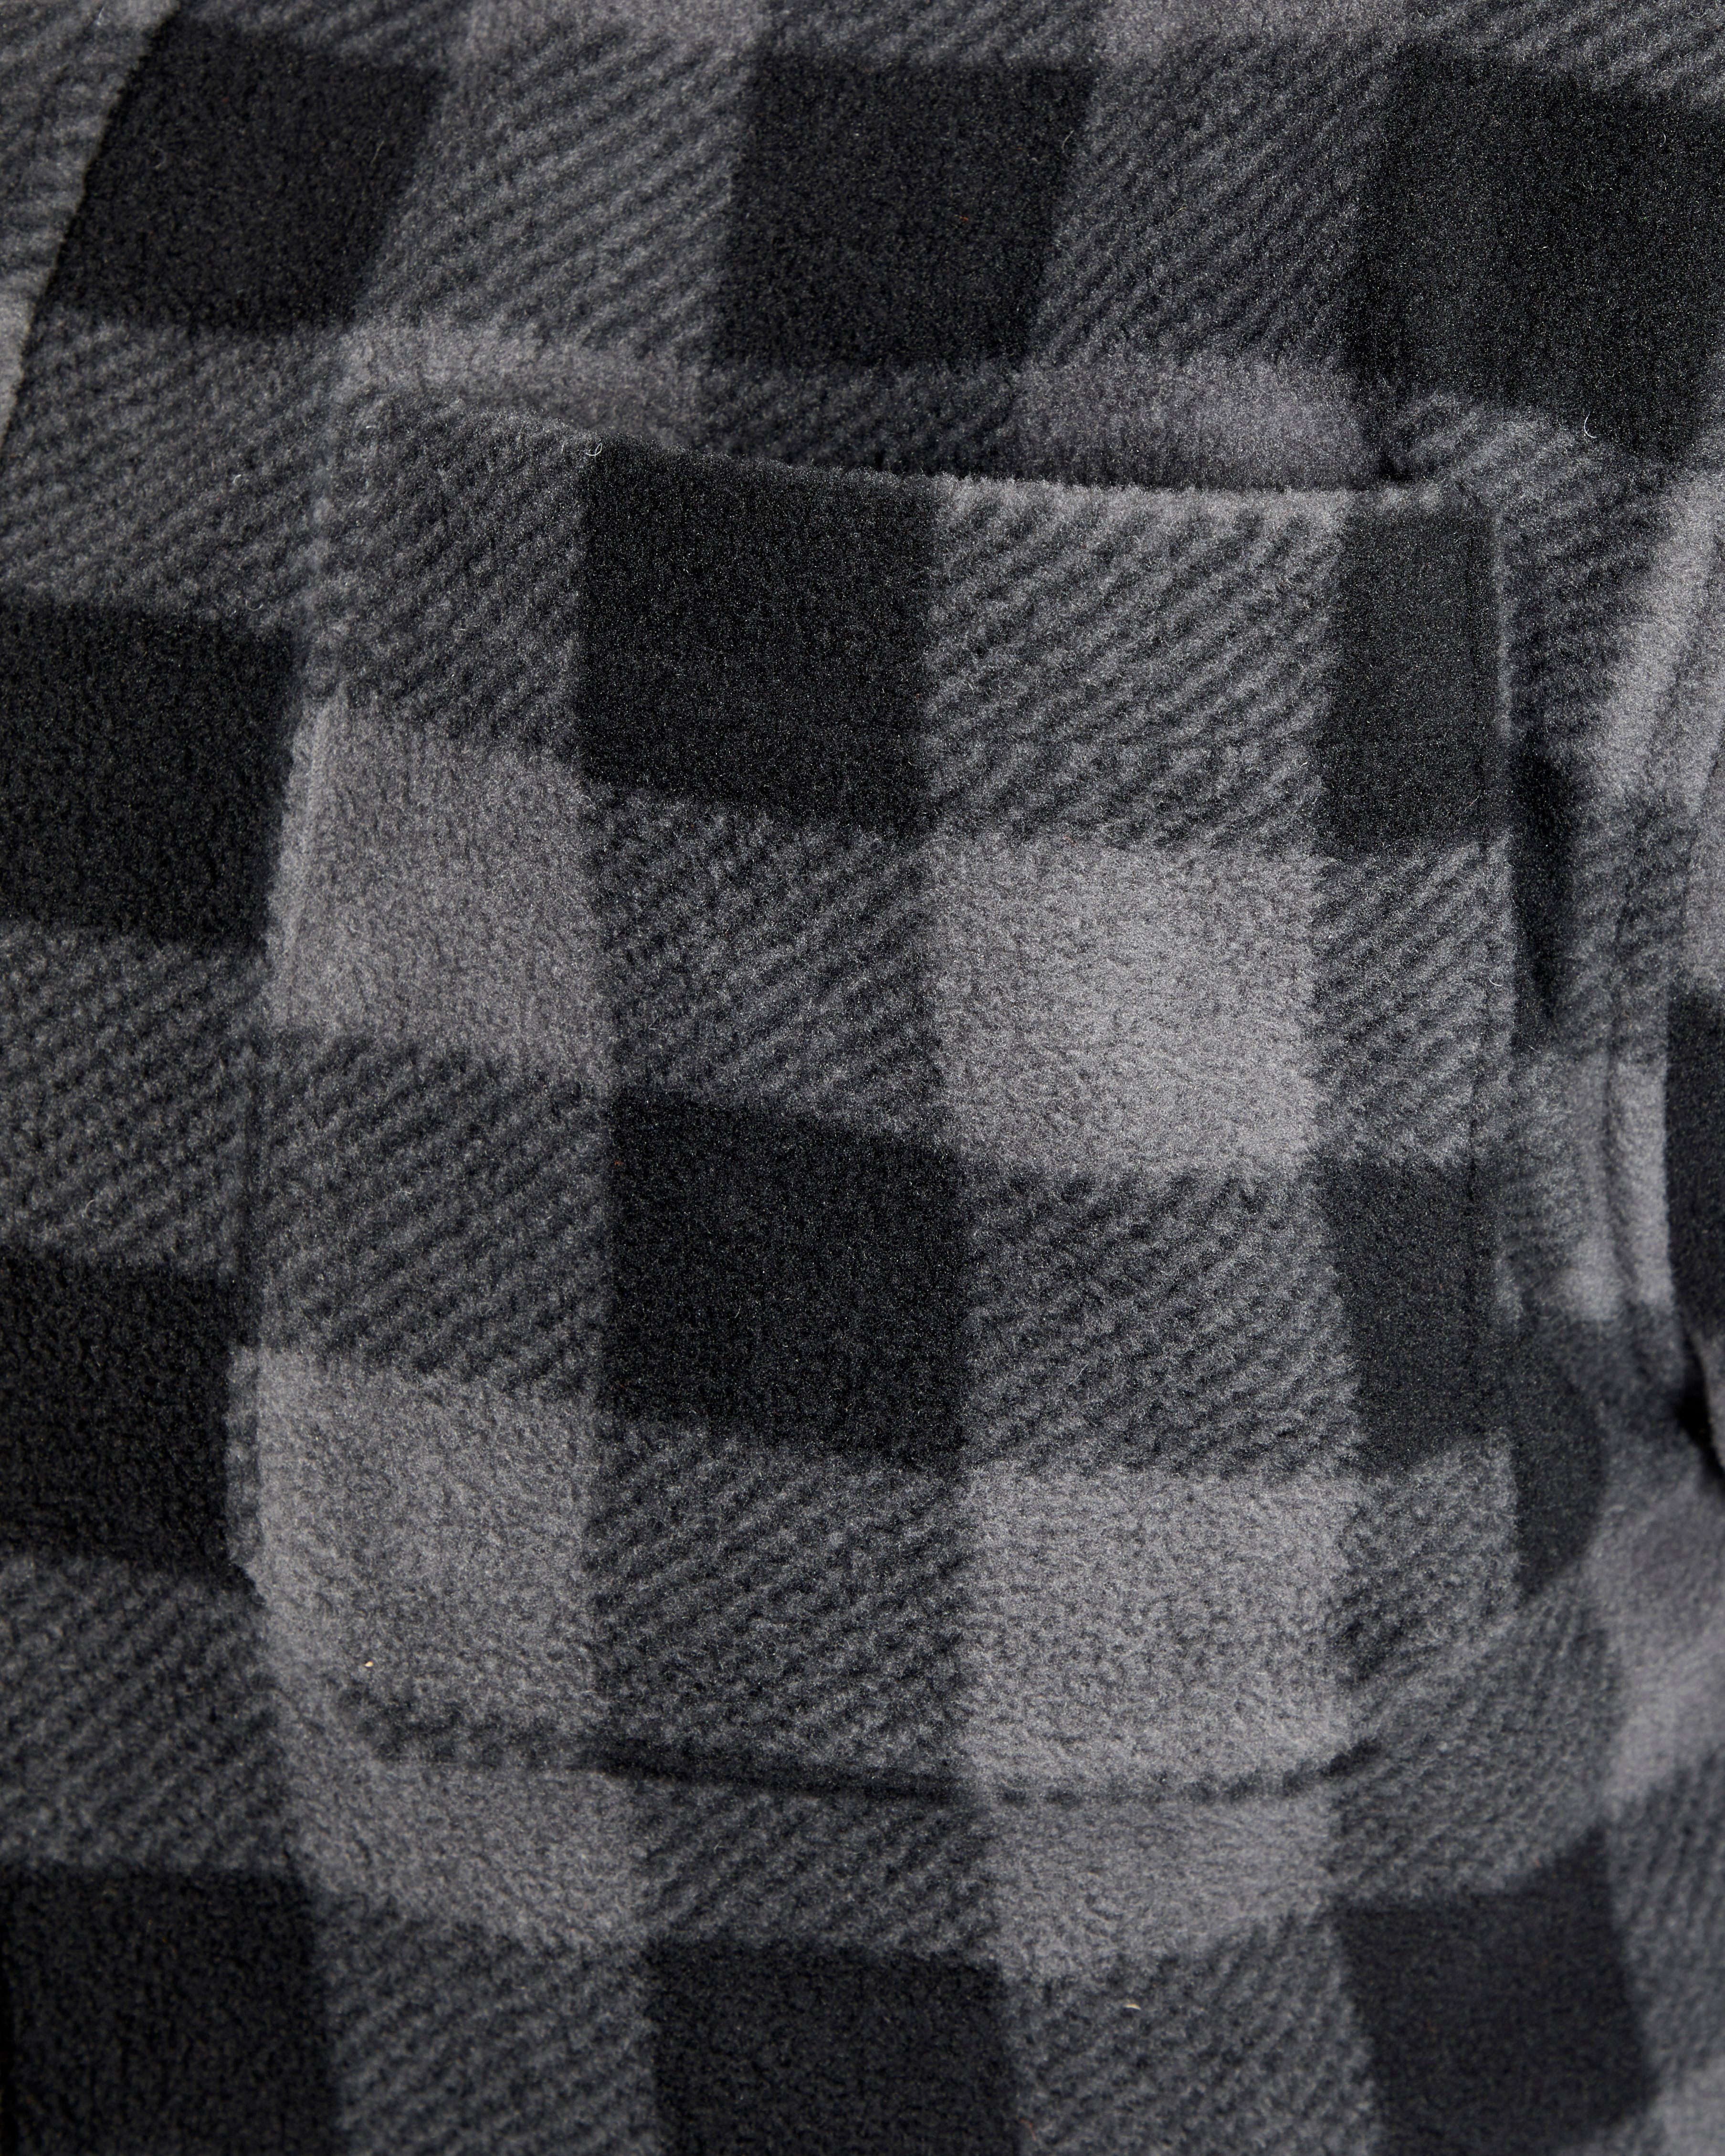 Flanellhemd verlängertem Rücken, offen tragen) Taschen, zu zugeknöpft (als Jacke Country 5 gefüttert, grau-schwarz mit Northern mit warm oder Flanellstoff Hemd